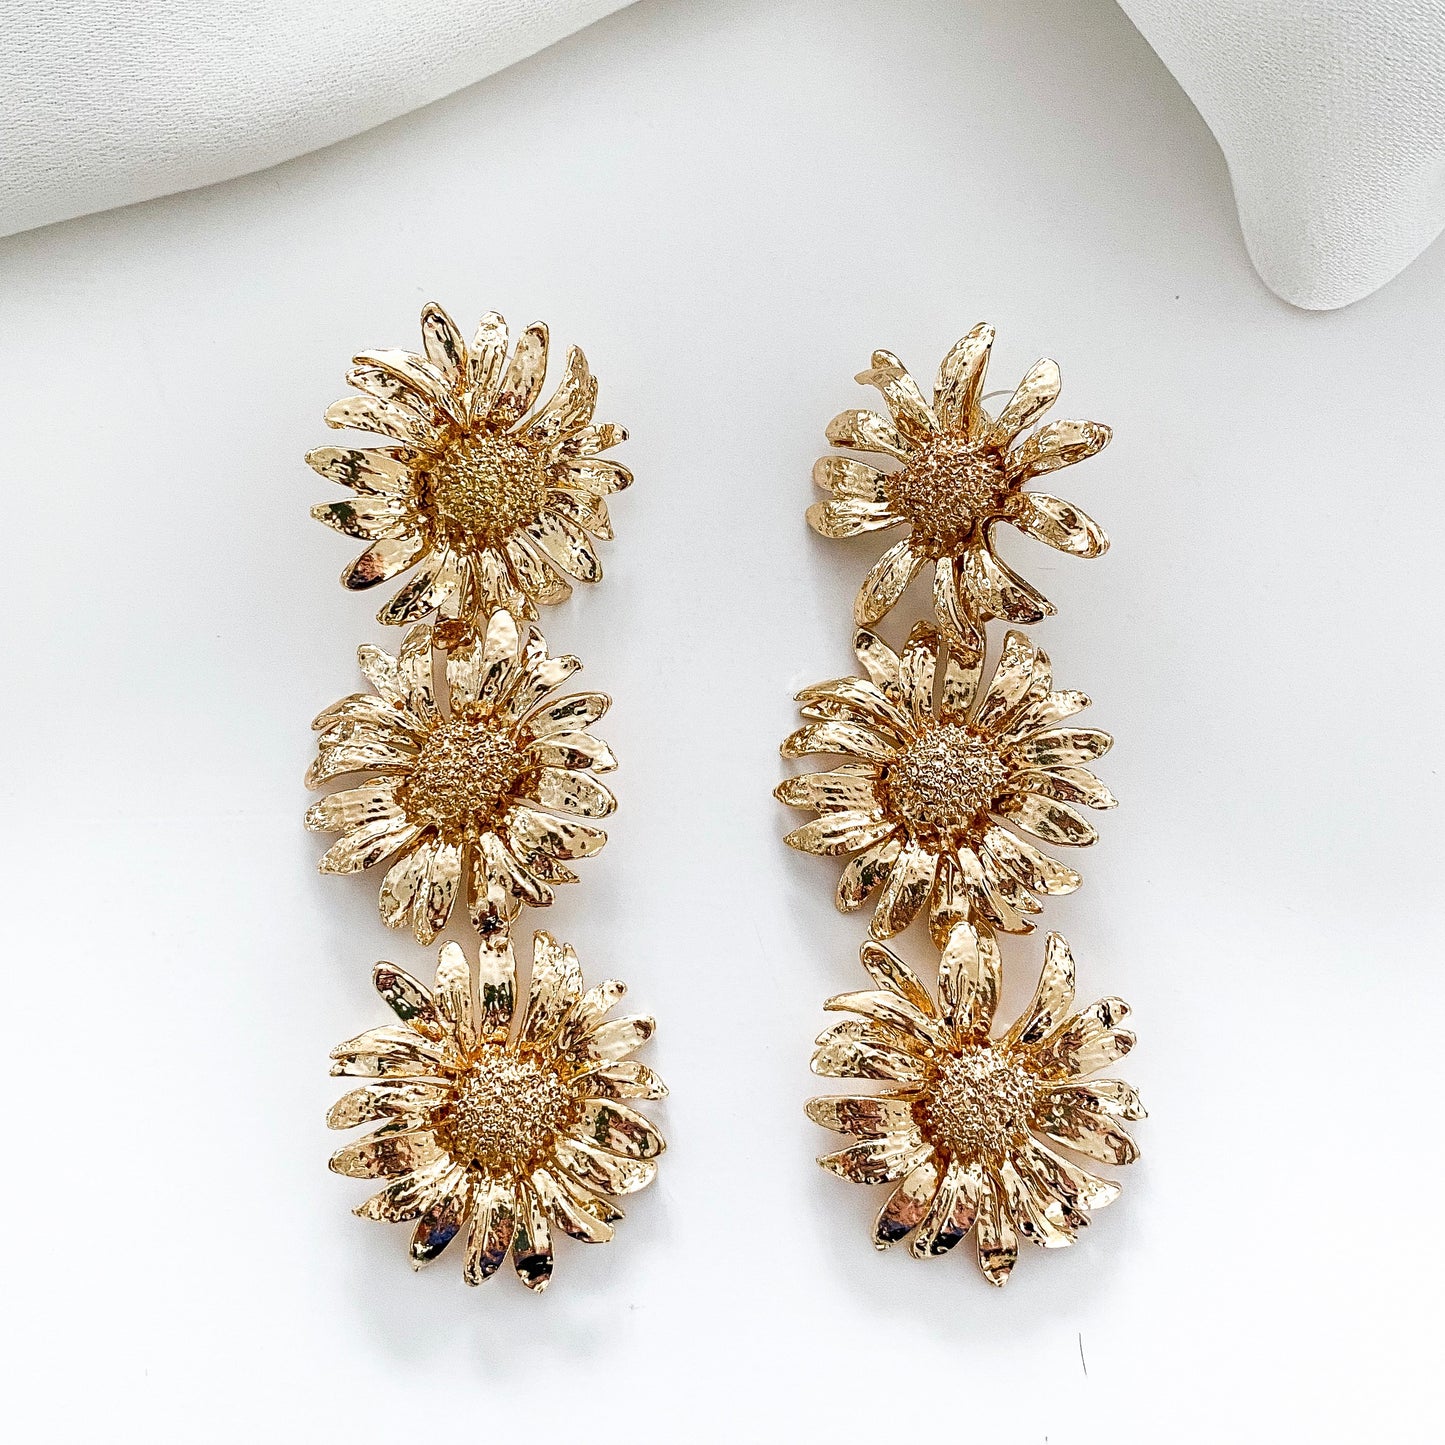 Sunflower Triple Gold Statement Earrings